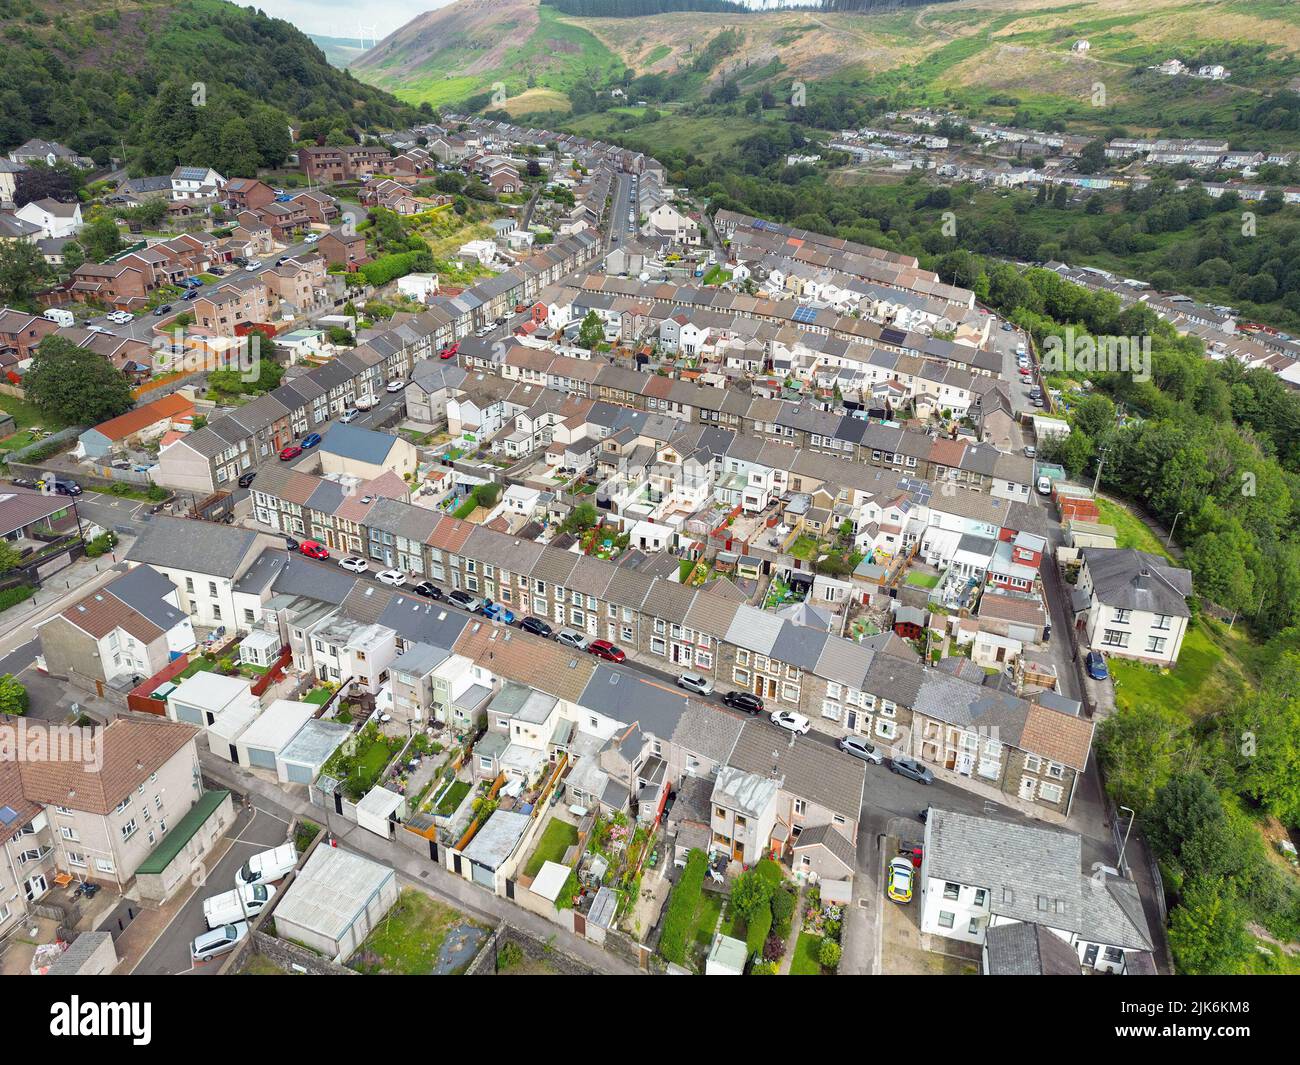 Ferndale, Valle de Rhondda, Gales - Julio 2022: Vista aérea de las casas adosadas en el pueblo de Ferndale en el valle de Rhondda Fach en el sur de Gales Foto de stock